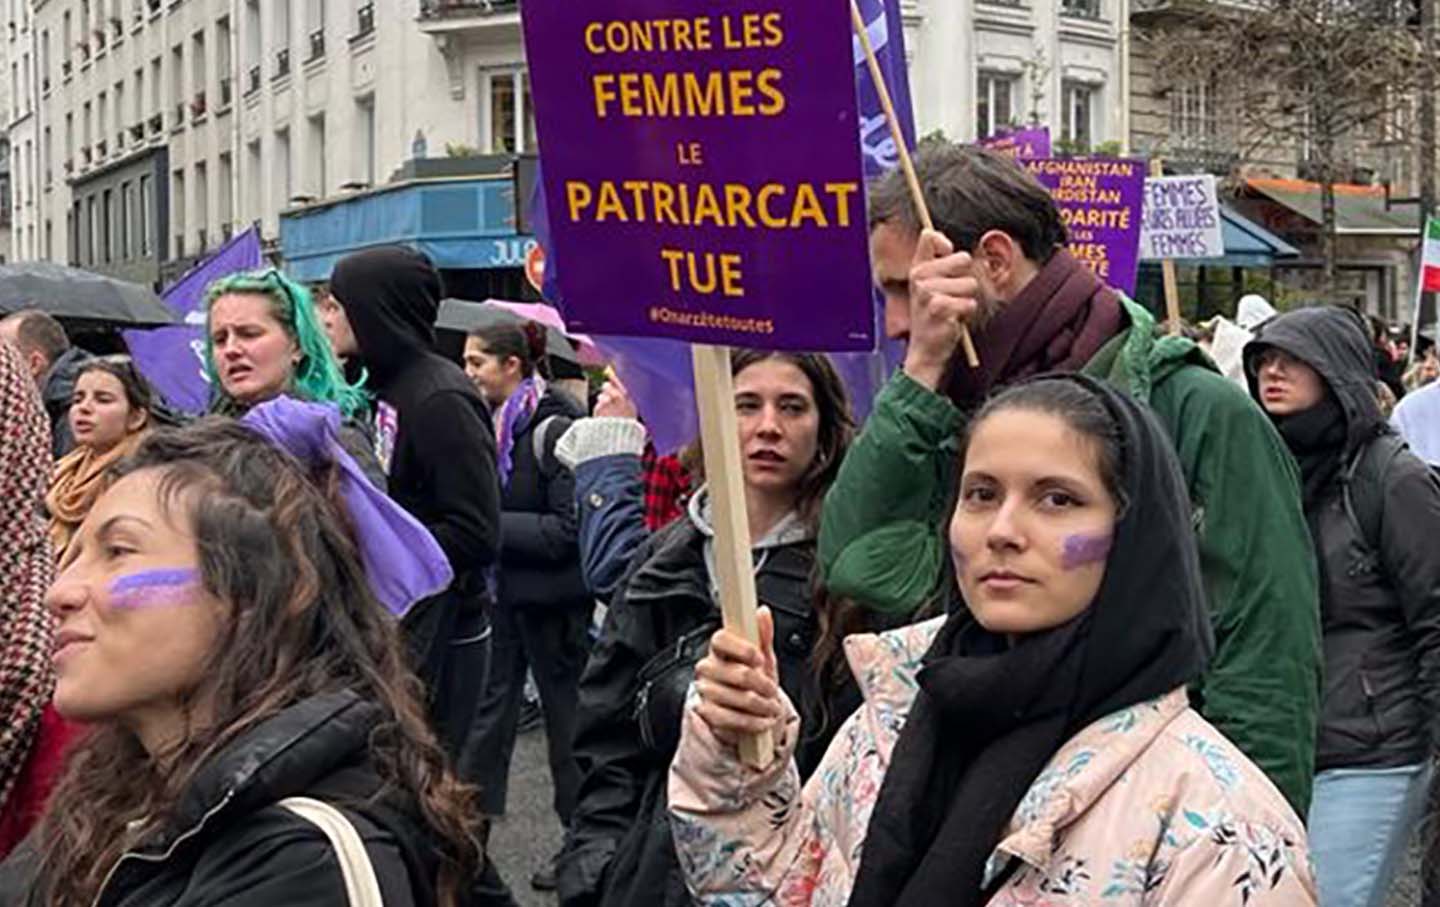 March in Paris